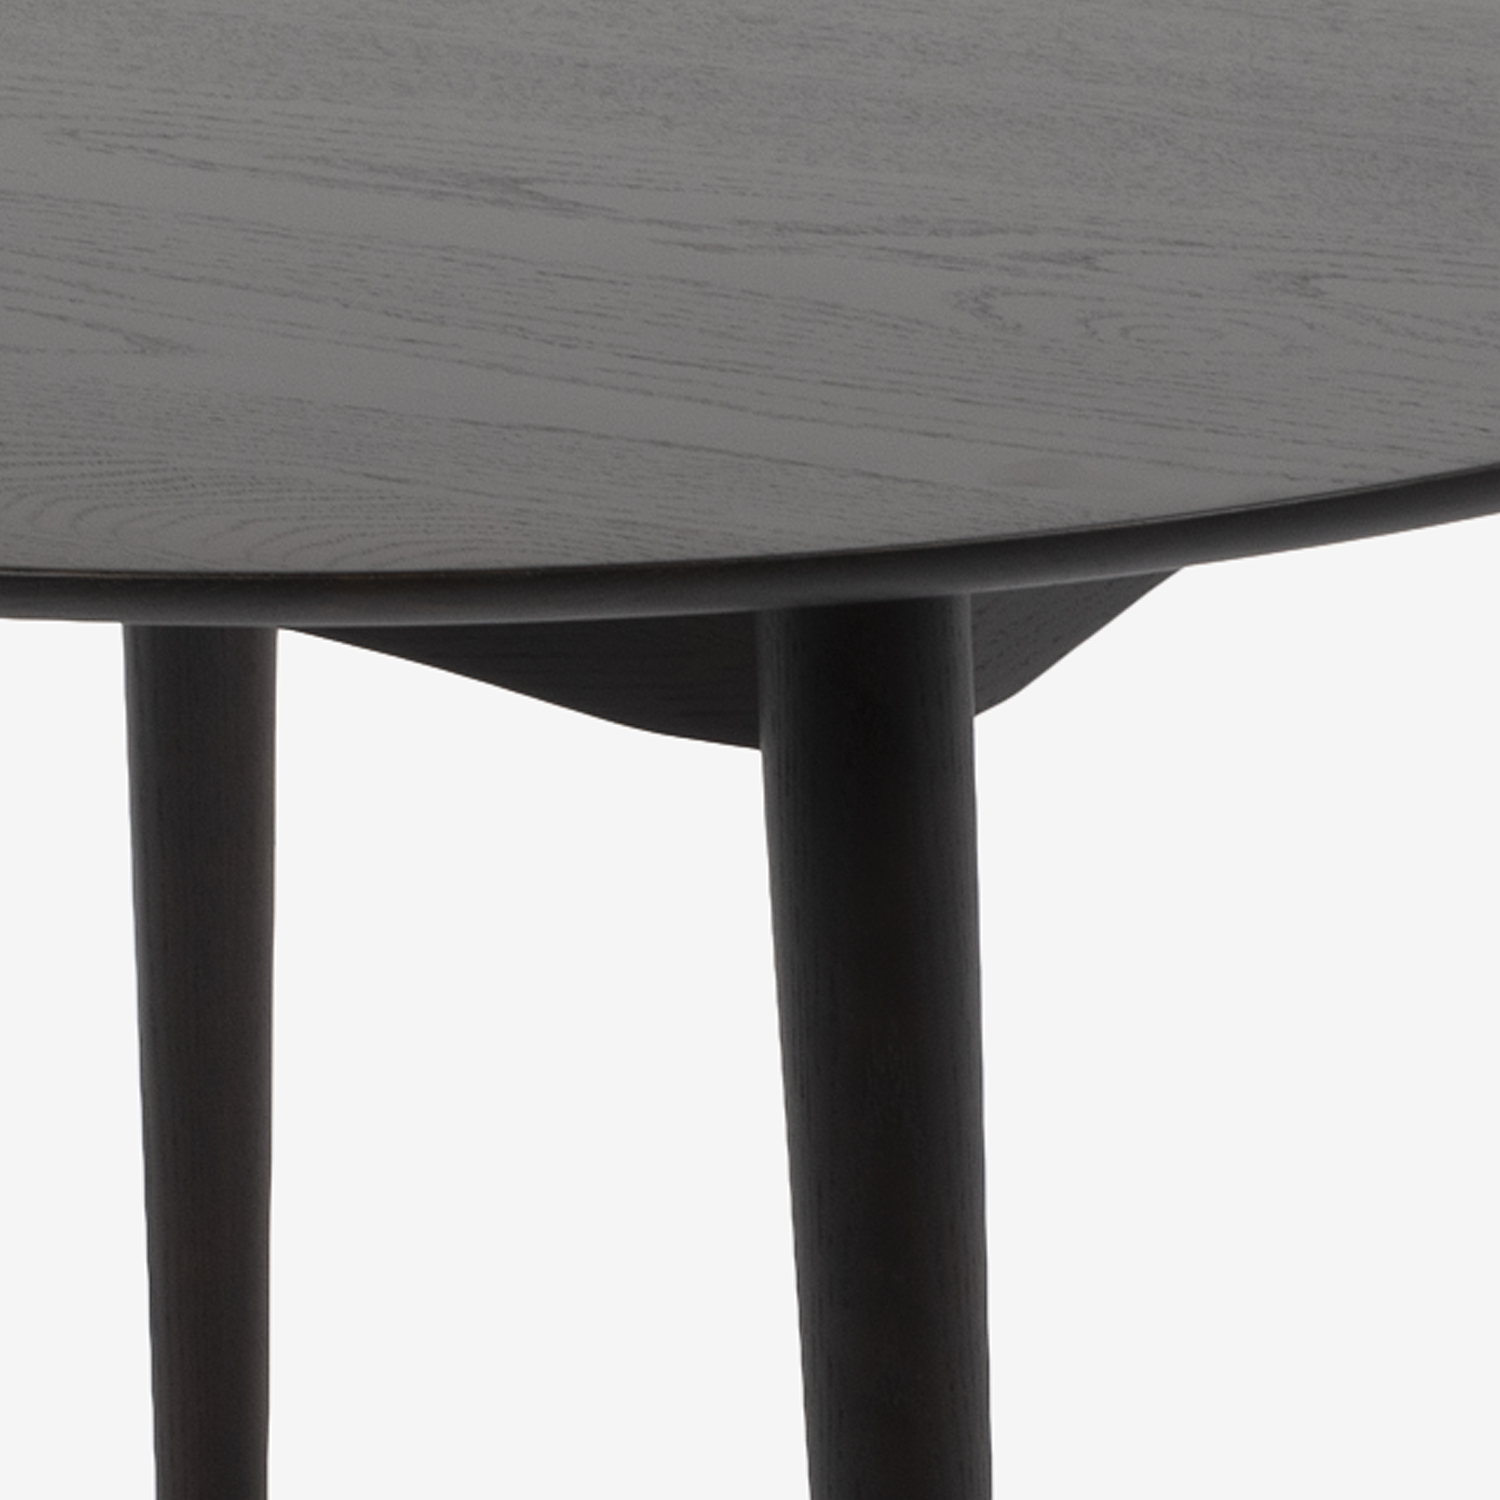 ダイニングテーブル｢シネマ3｣ 円形 レッドオーク材 ダークブラウン色 全2サイズ